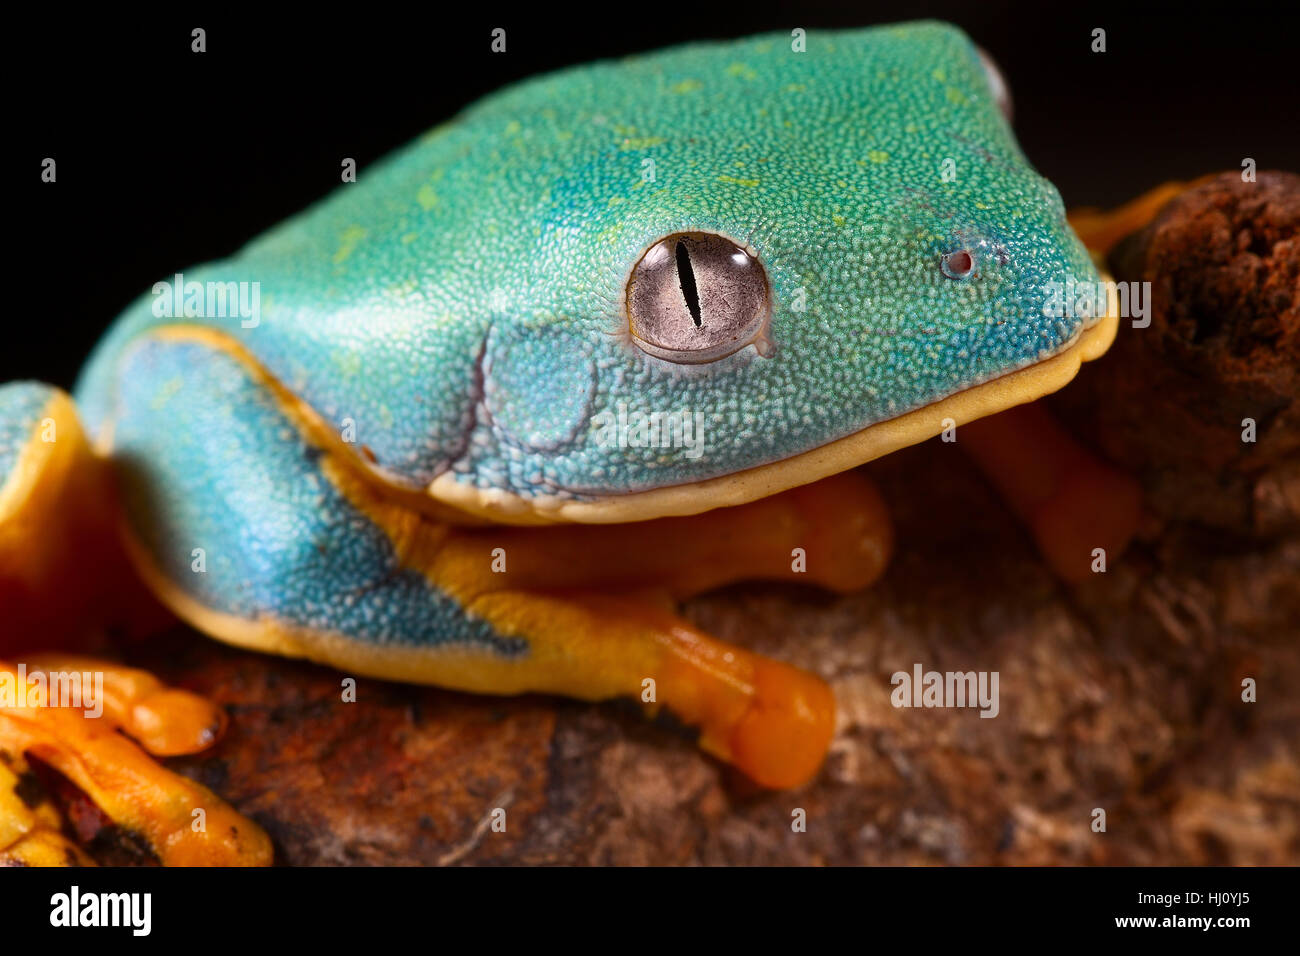 Azul, macro, close-up, macro admisión, vista cercana, animal anfibio, ojo, Foto de stock